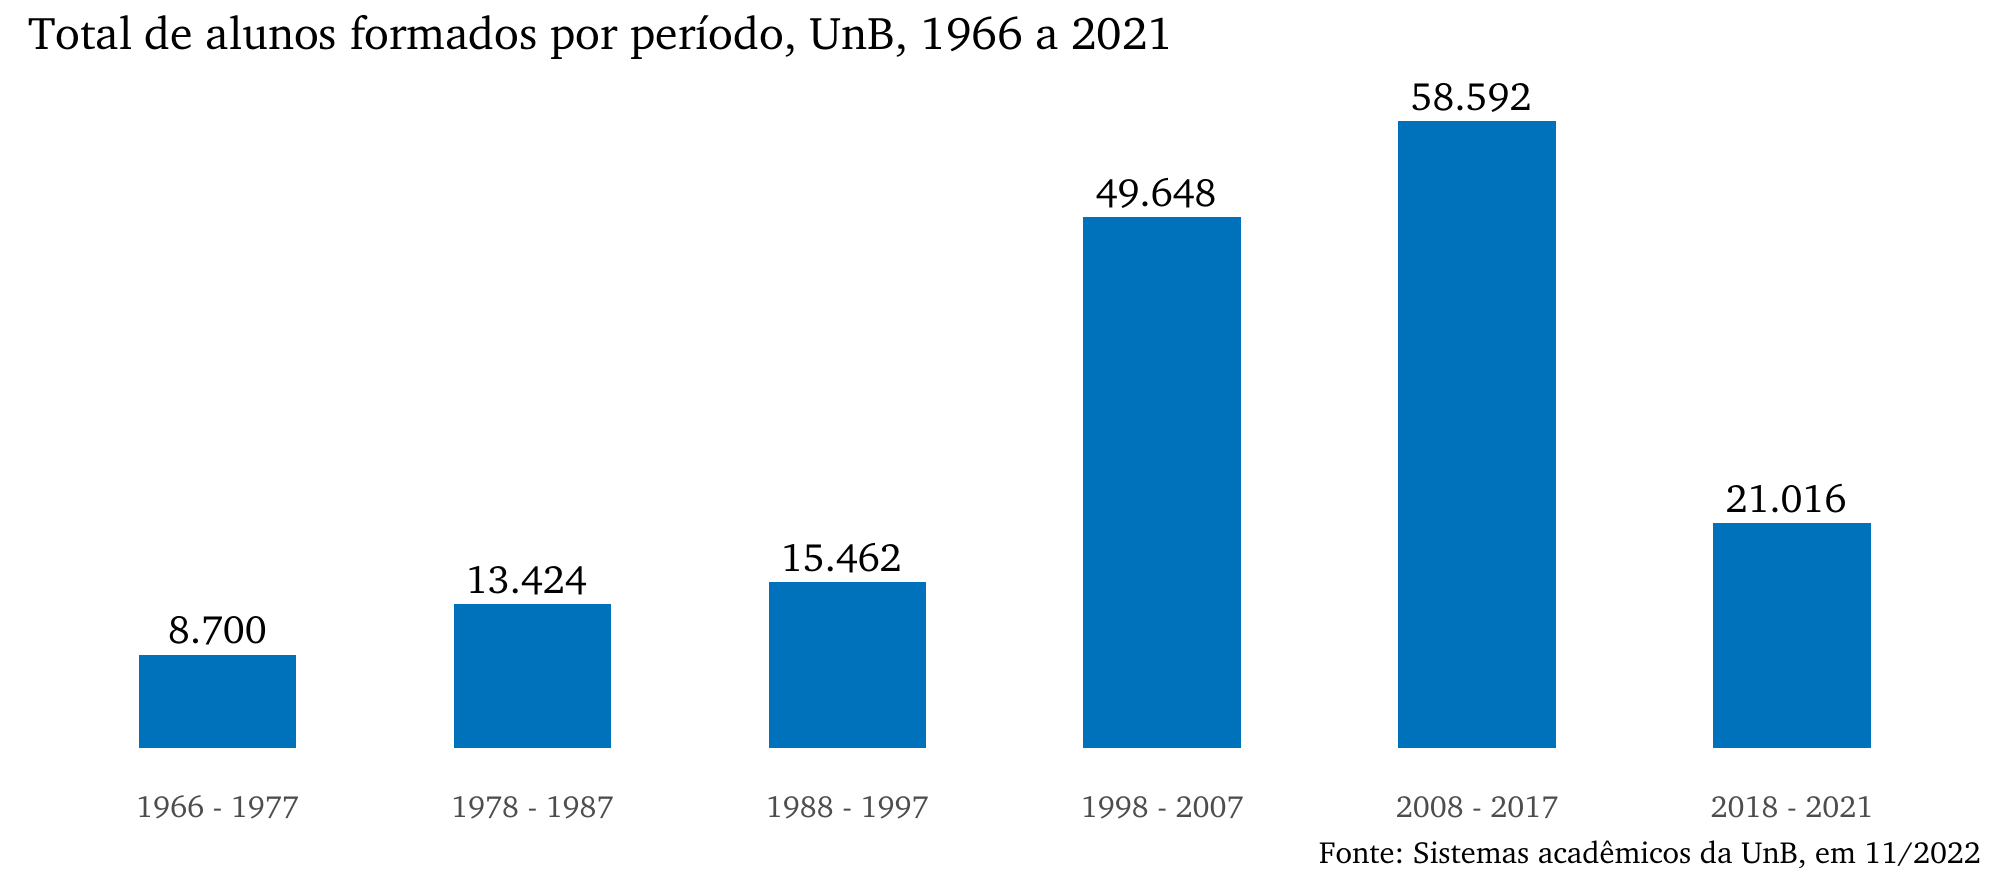 Total de alunos formados por período, UnB, 1966 a 2021